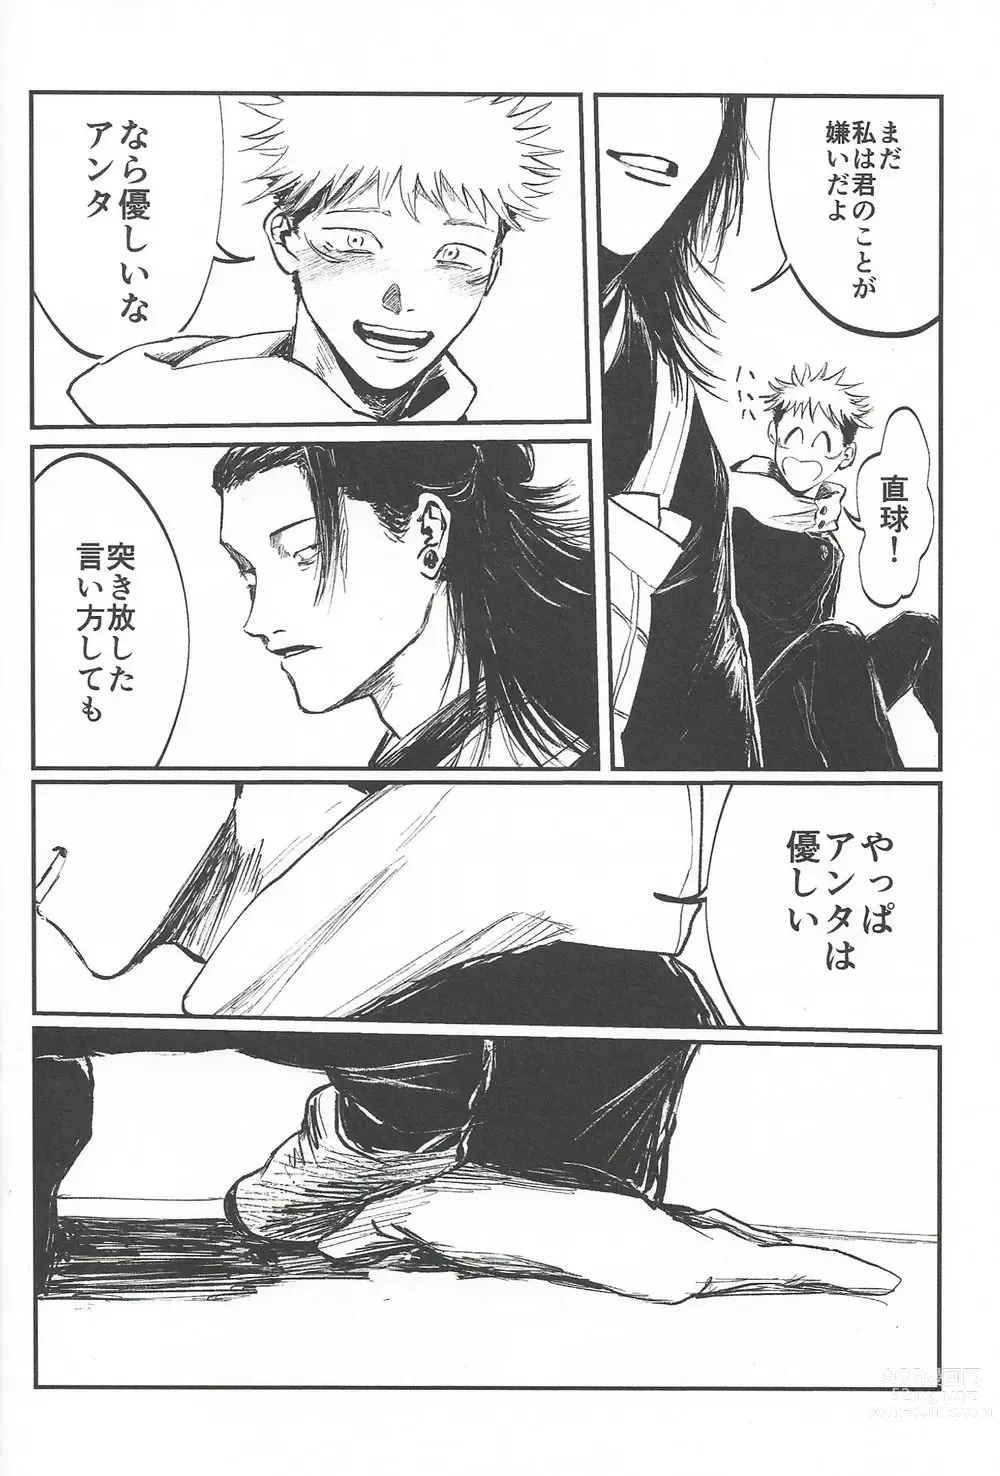 Page 28 of doujinshi Rakuen no Niwa